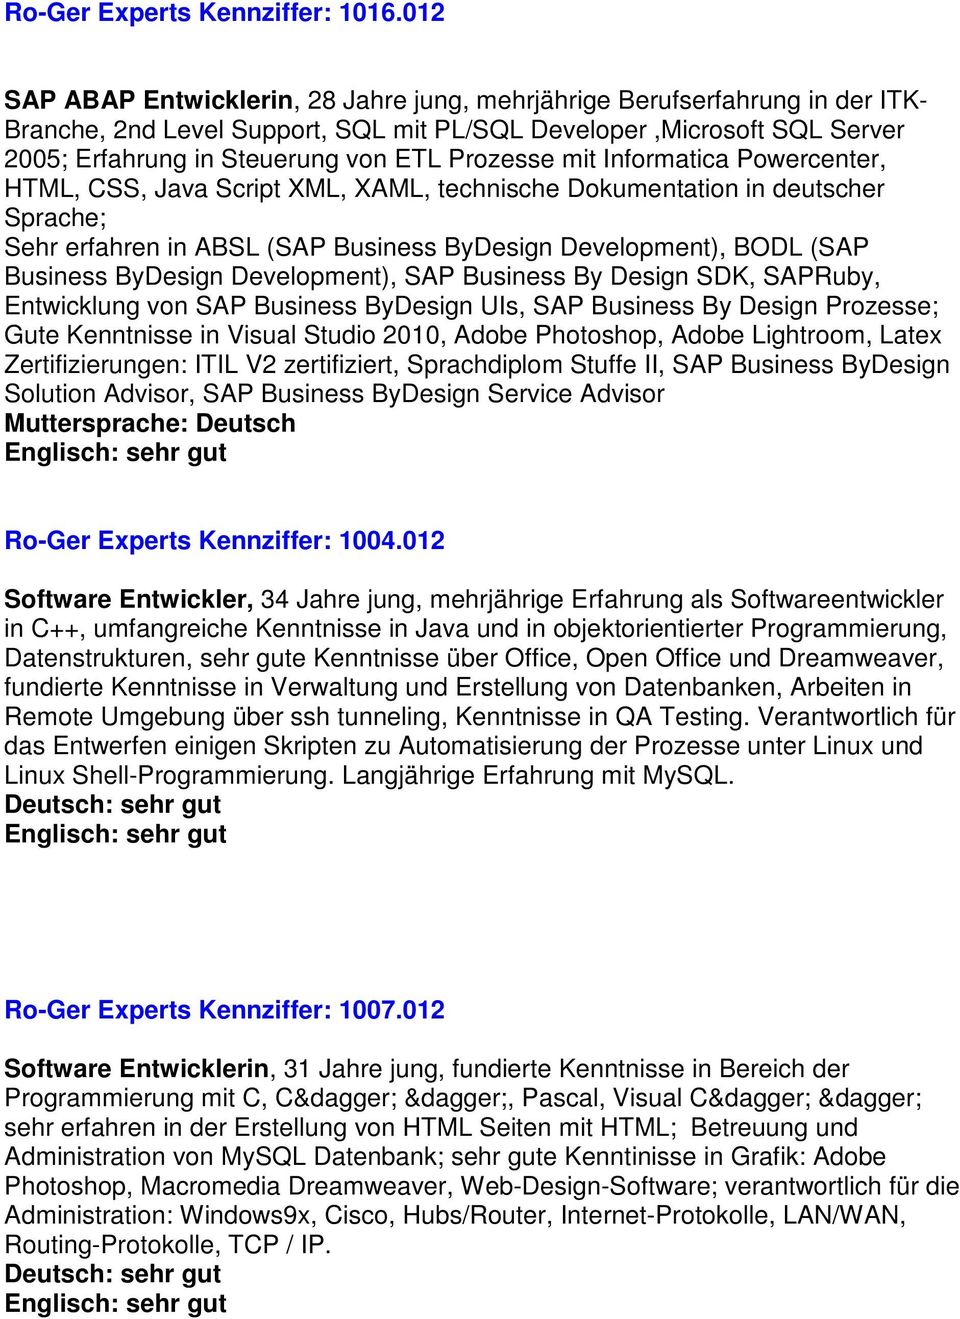 Prozesse mit Informatica Powercenter, HTML, CSS, Java Script XML, XAML, technische Dokumentation in deutscher Sprache; Sehr erfahren in ABSL (SAP Business ByDesign Development), BODL (SAP Business